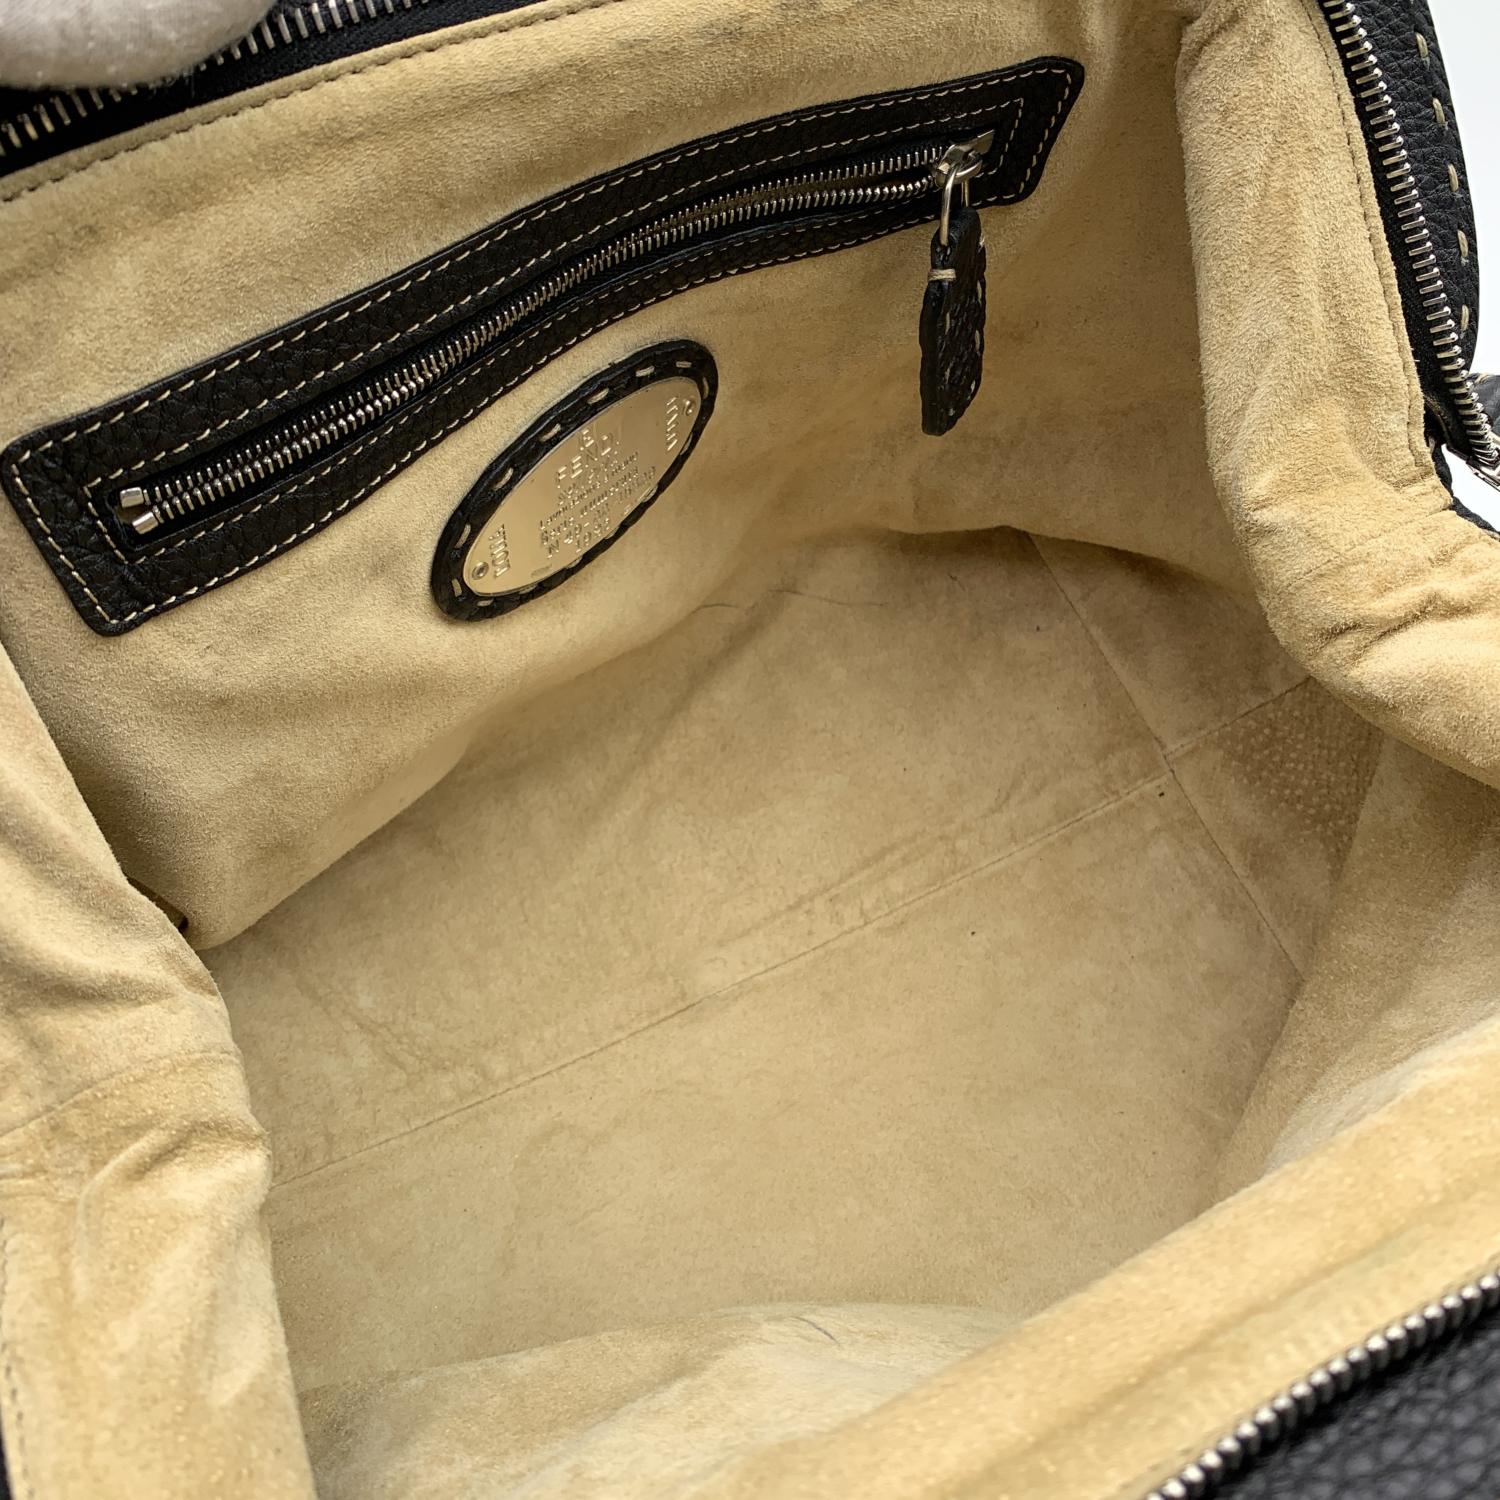 Women's Fendi Selleria Black Leather Doctor Bag Handbag Satchel